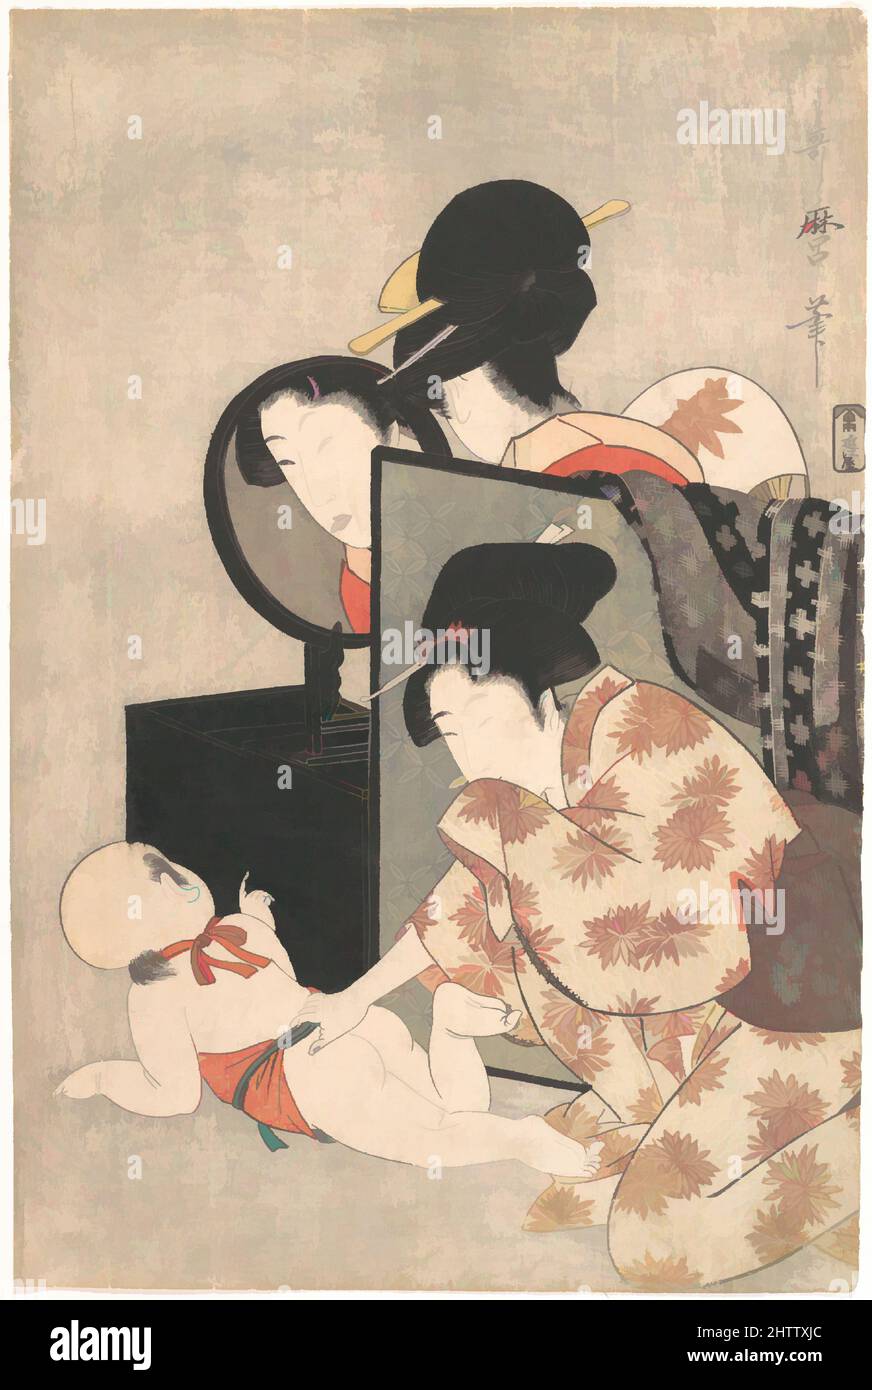 Art inspiré par la mère et l'enfant, période Edo (1615–1868), env. 1793, Japon, imprimé polychrome sur bois ; encre et couleur sur papier, H. 14 7/8 po. (37,8 cm) ; avec 9 7/8 po (25,1 cm), Prints, Kitagawa Utamaro (japonais, 1753?–1806), Utamaro a composé cette image avec beaucoup d'habileté et d'humour, les œuvres classiques modernisées par Artotop avec un peu de modernité. Formes, couleur et valeur, impact visuel accrocheur sur l'art émotions par la liberté d'œuvres d'art d'une manière contemporaine. Un message intemporel qui cherche une nouvelle direction créative. Artistes qui se tournent vers le support numérique et créent le NFT Artotop Banque D'Images